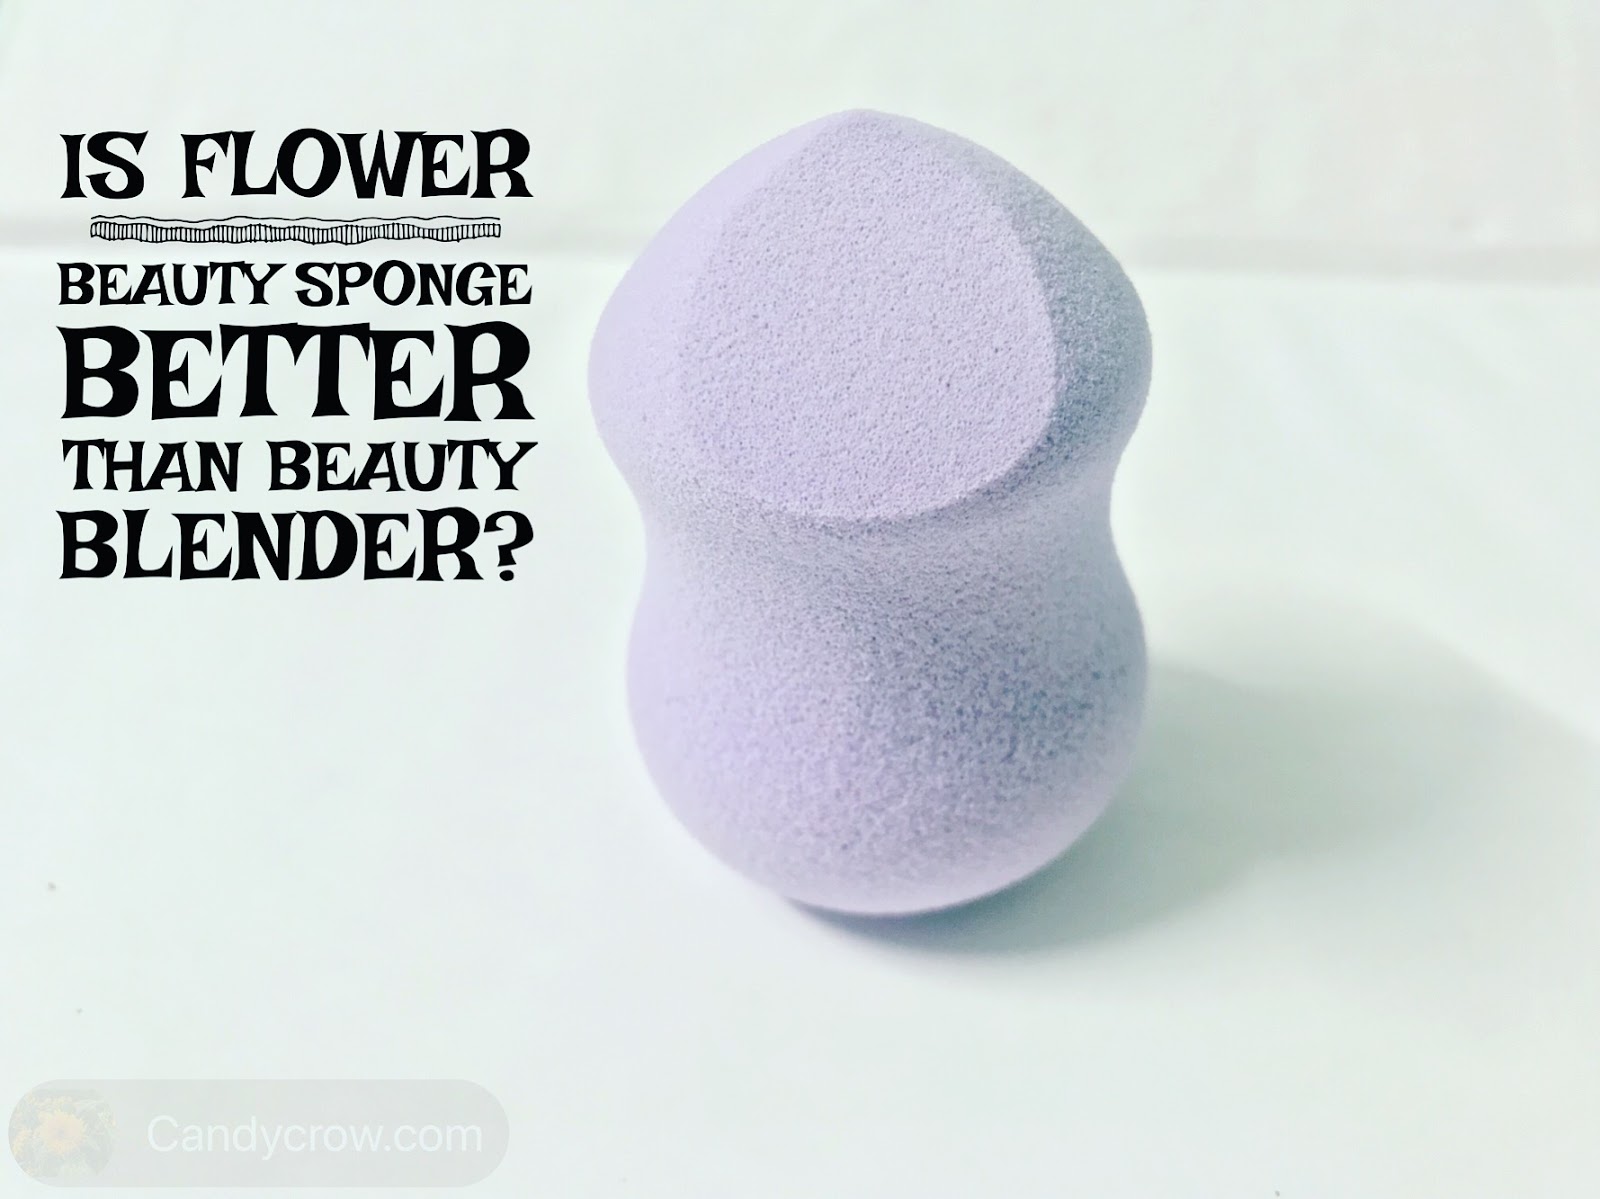 Flower Ultimate 3 in 1 Blending Sponge Review